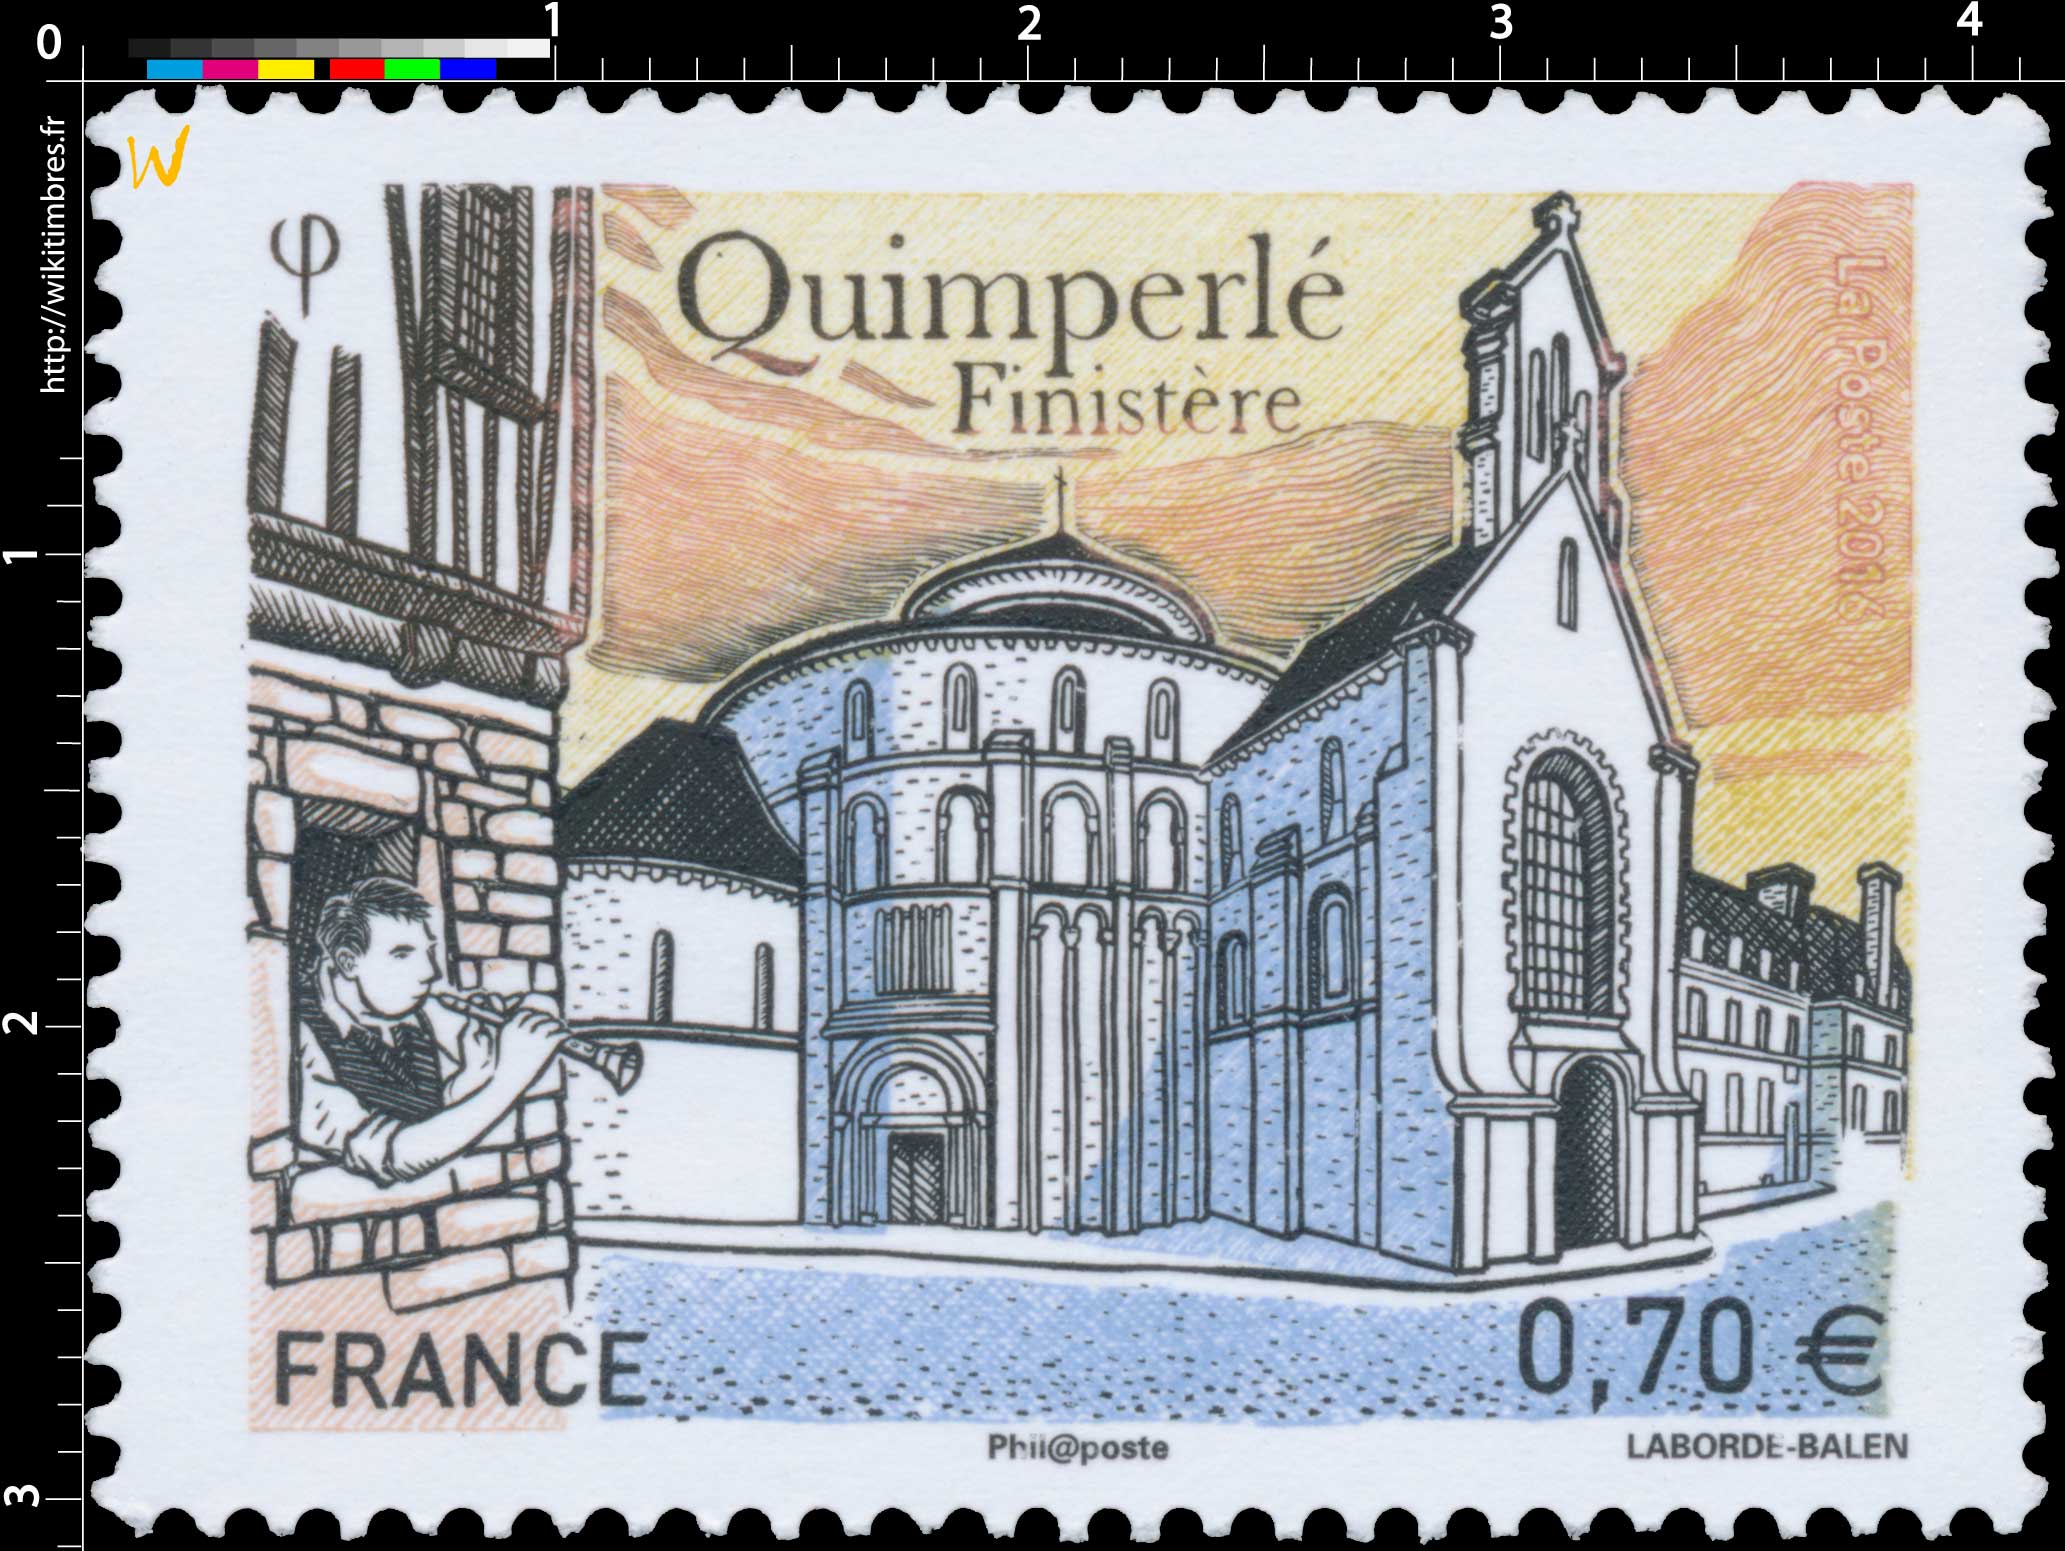 2016 Quimperlé - Finistère